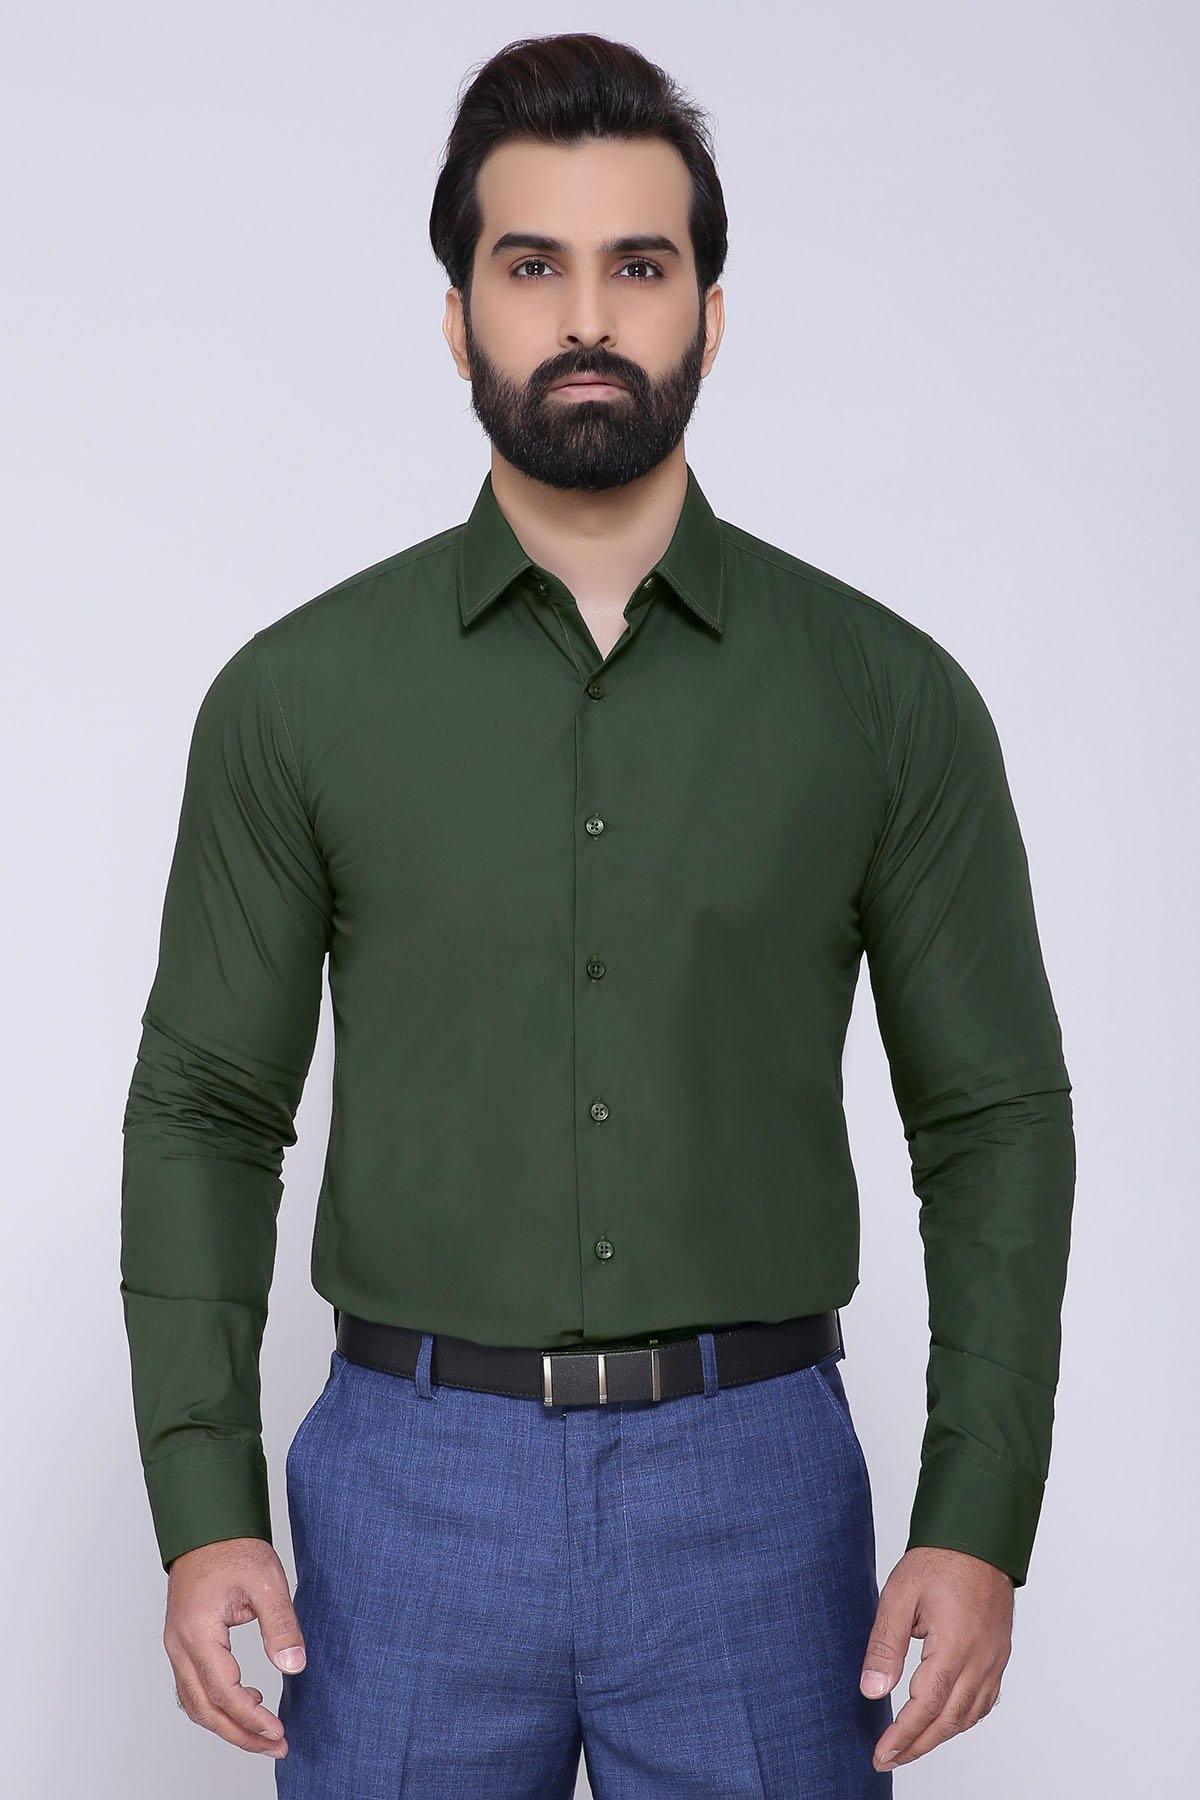 DRESS SHIRT FULL COLLAR GREEN at Charcoal Clothing